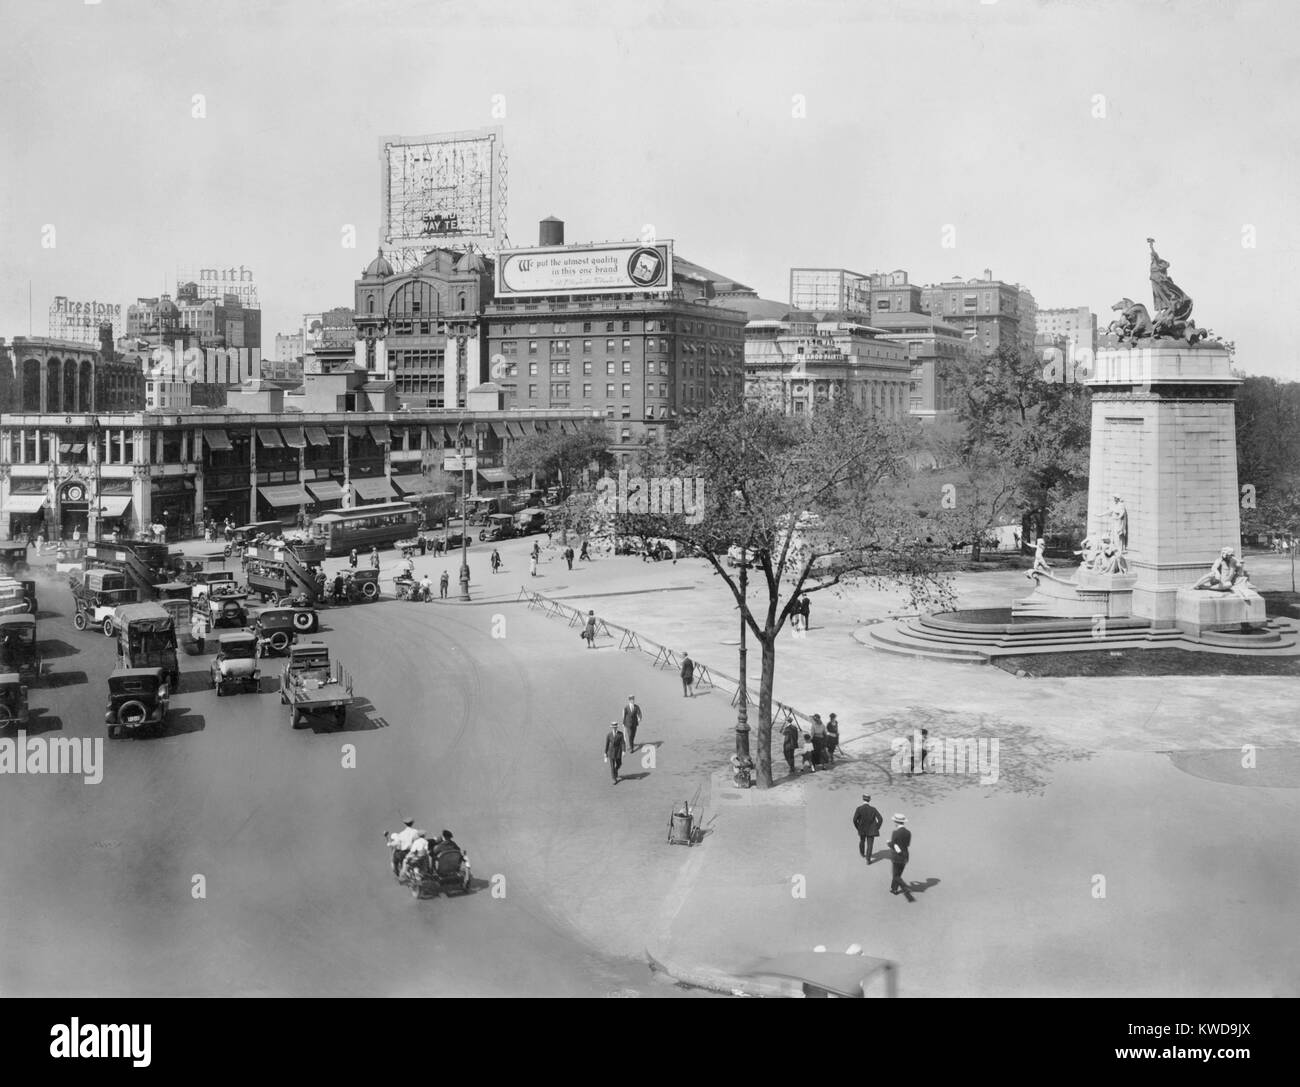 New York City's Columbus Circle à l'intersection de Broadway, 8e Avenue, et la 59e Rue. En 1921 Trollies, double decker bus, voitures, camions, chevaux et vendeurs pushcart shard la rue sur le coin sud-ouest de Central Park (BSLOC   2016 10 202) Banque D'Images